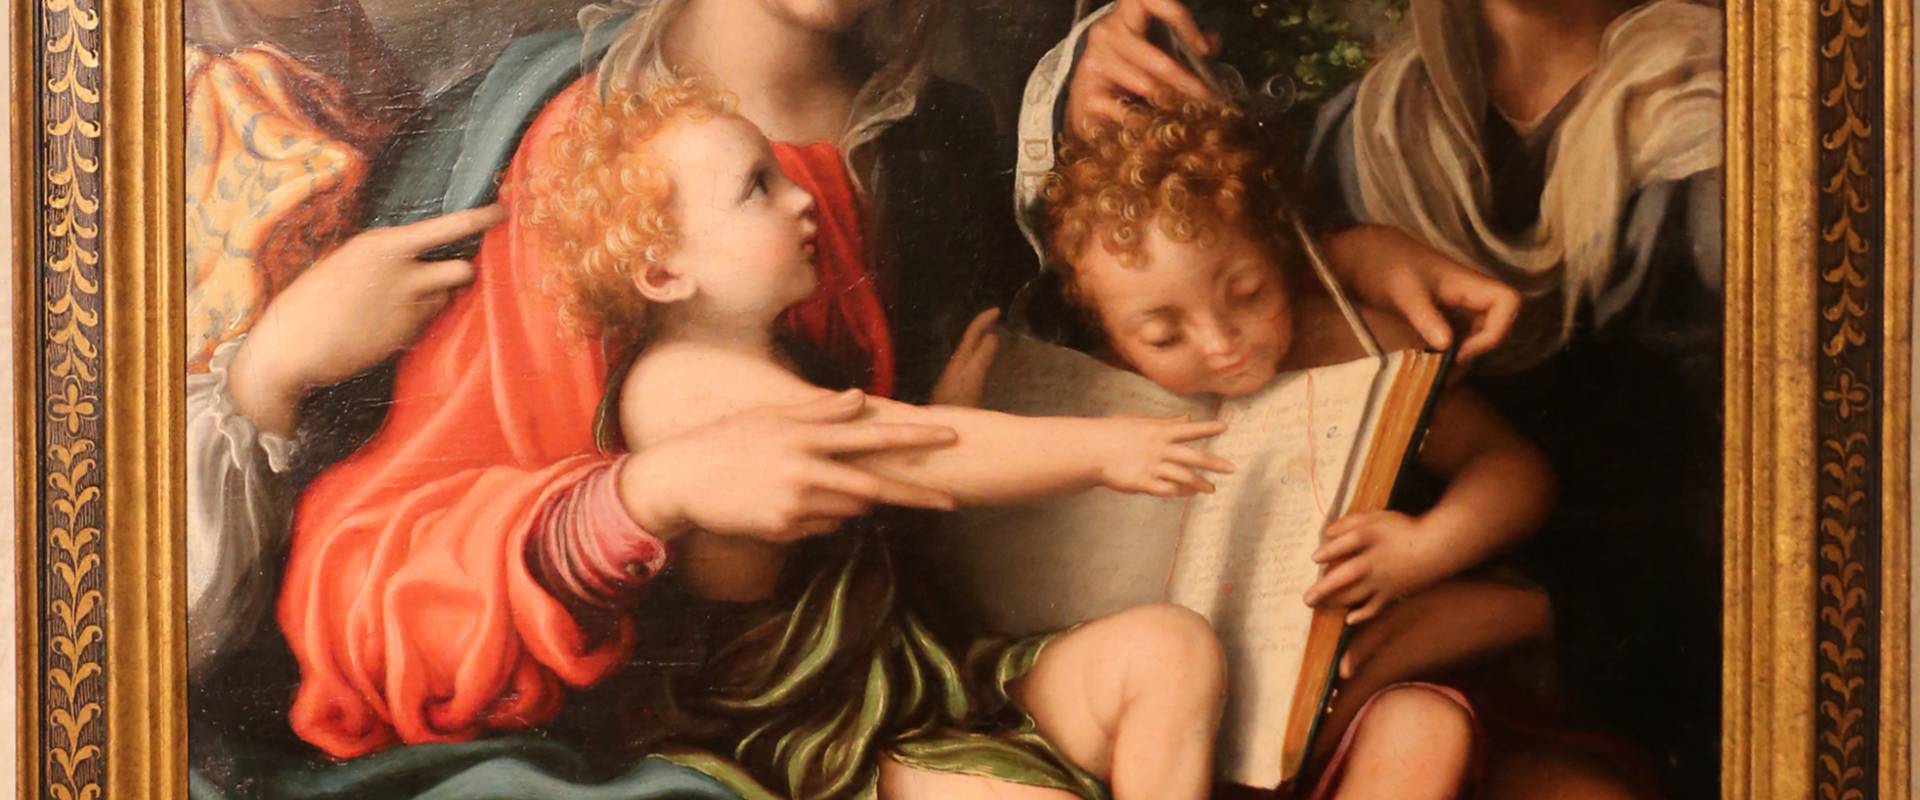 Giorgio gandini del grano, madonna col bambino, san giovannino e le ss. maddalena ed elisabetta, 1527 ca foto di Sailko